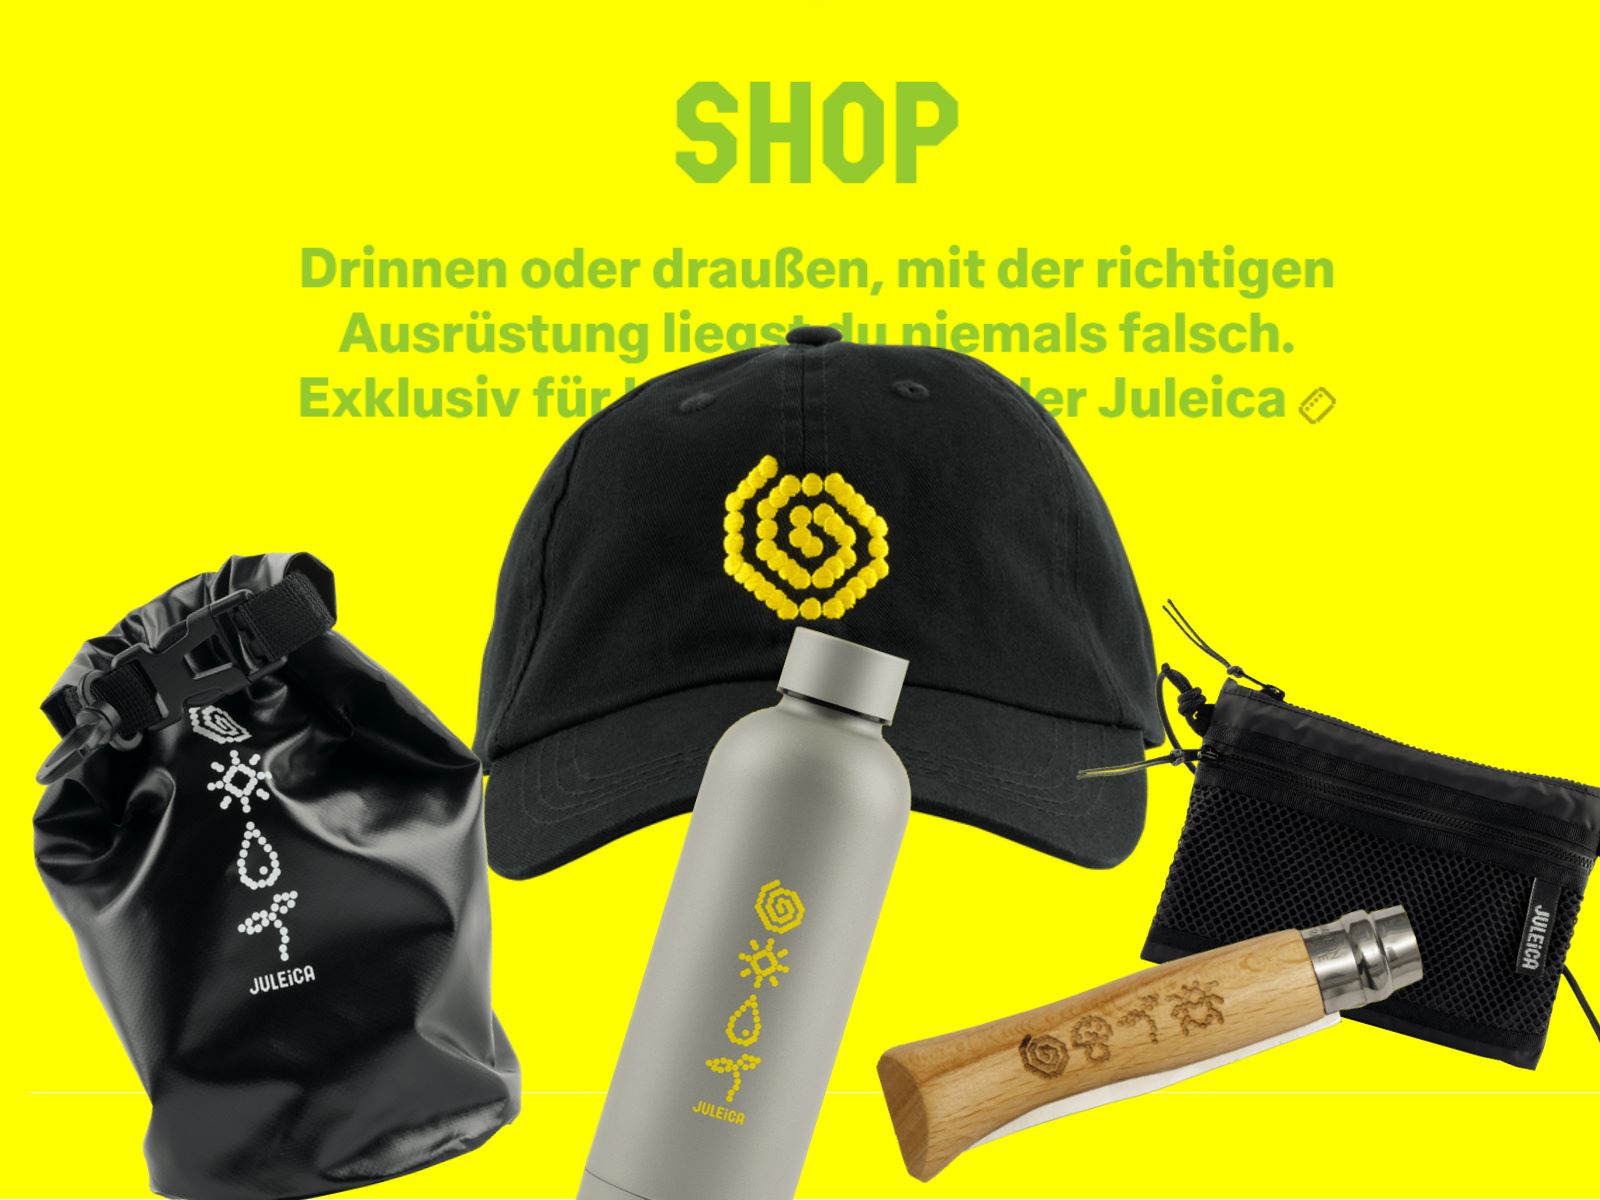 Produkte aus dem Shop auf gelbem Hintergrund: Cap, Messer, Trinkflasche, und mehr.